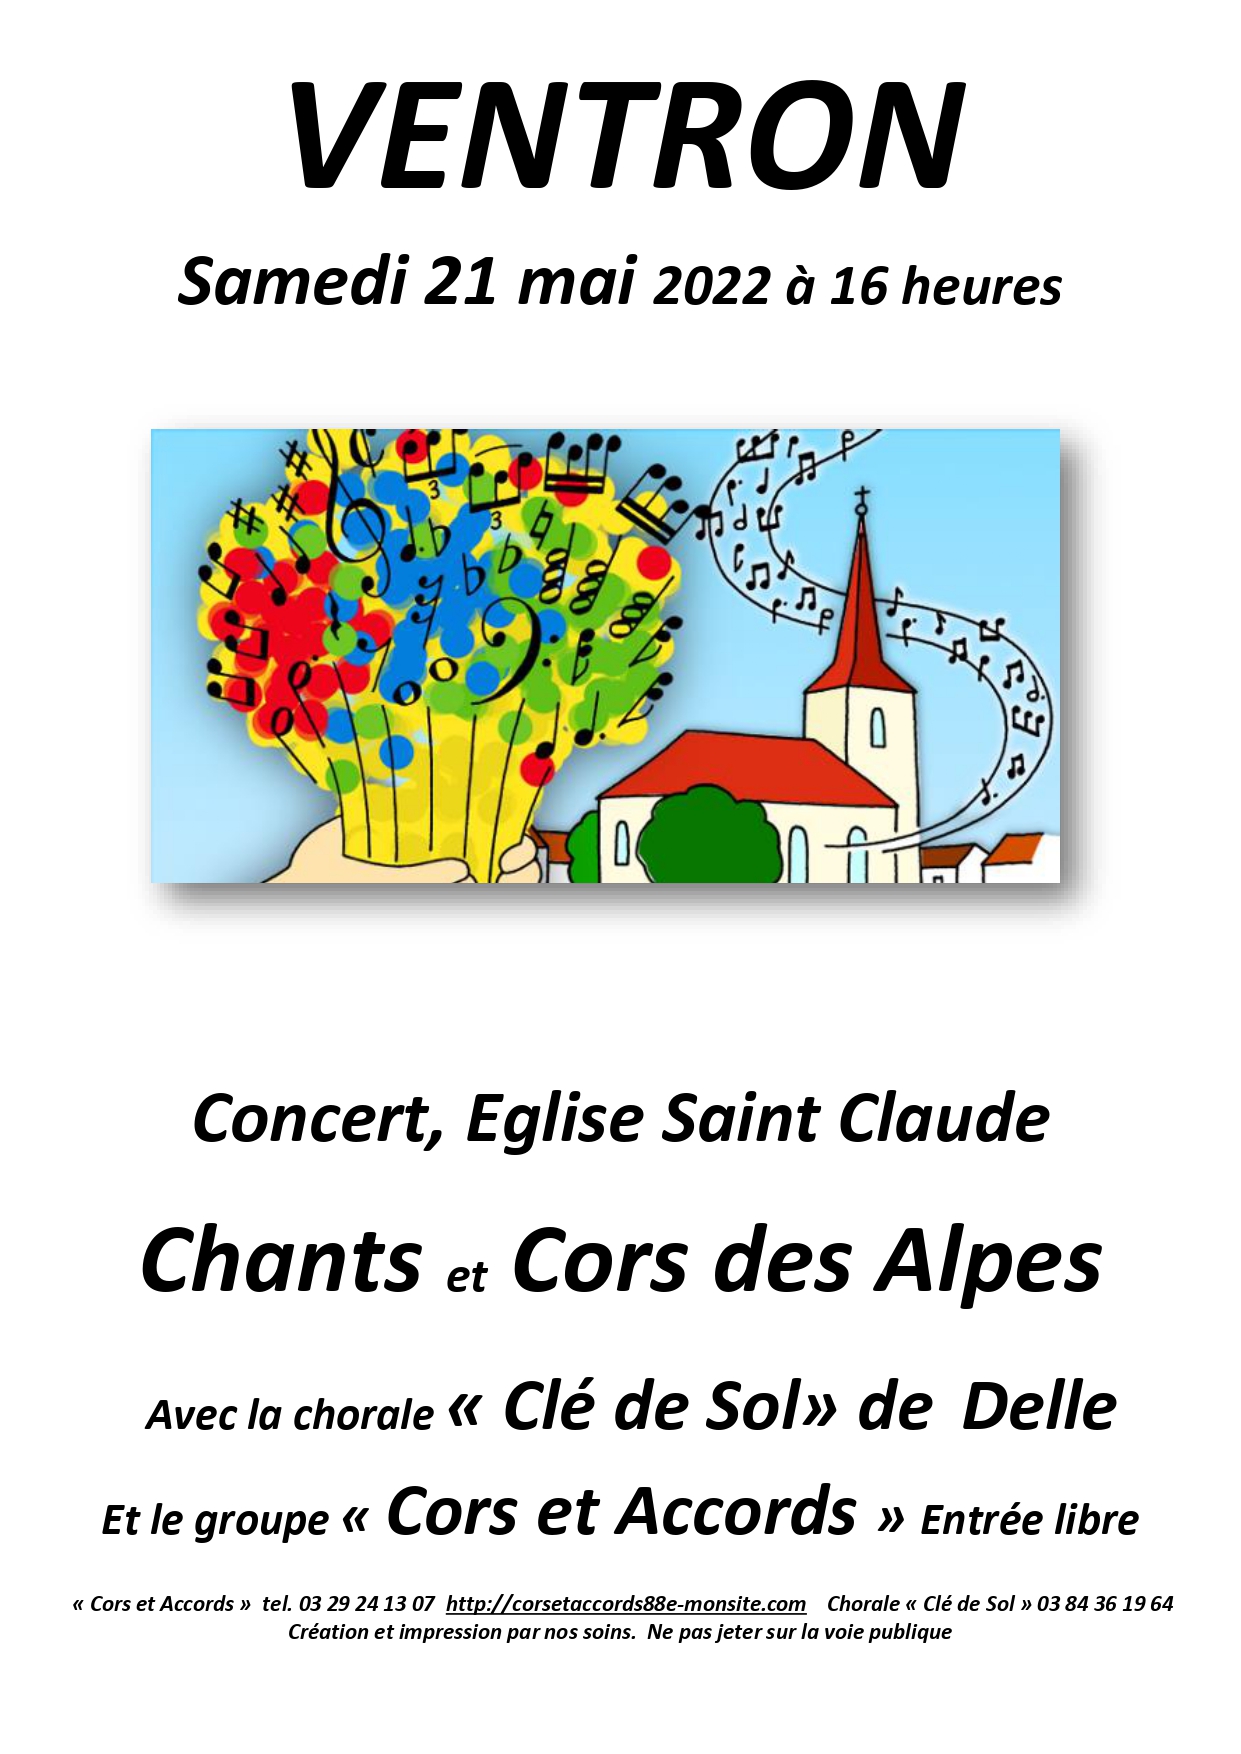 Concert Chorale et Cors des Alpes 21 mai, 16 heures à Ventron